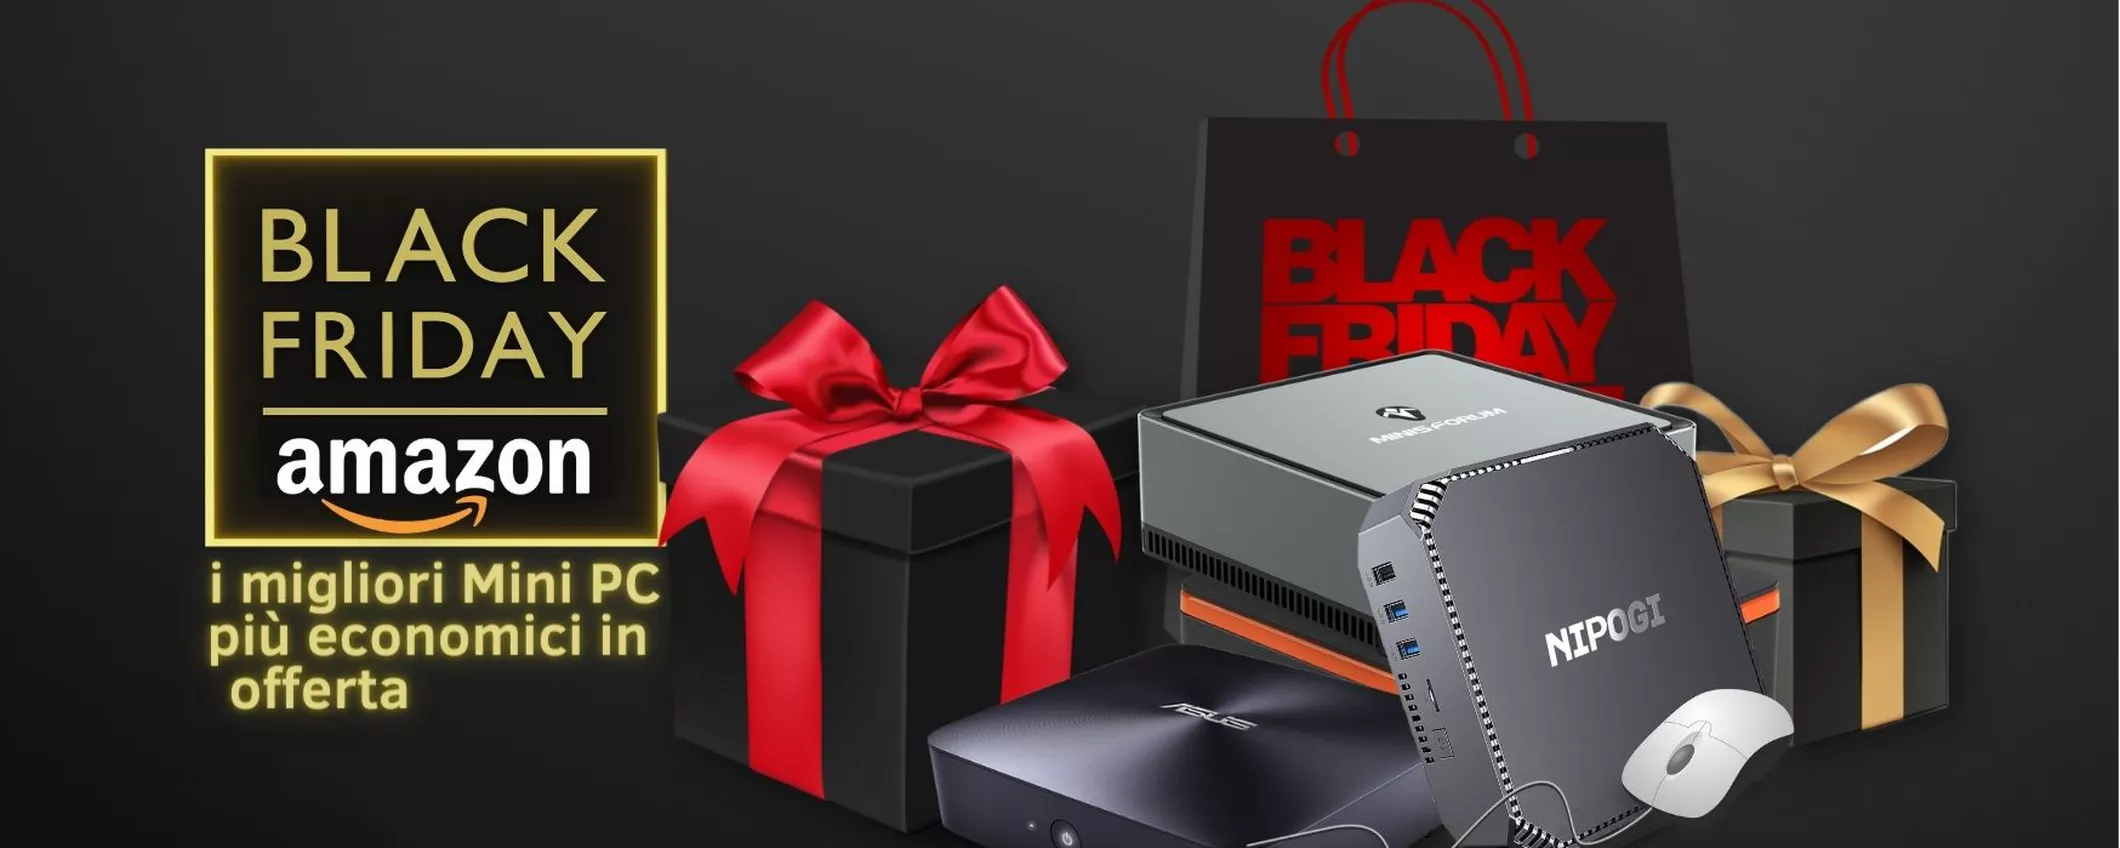 Amazon Black Friday: i migliori Mini PC più economici in offerta